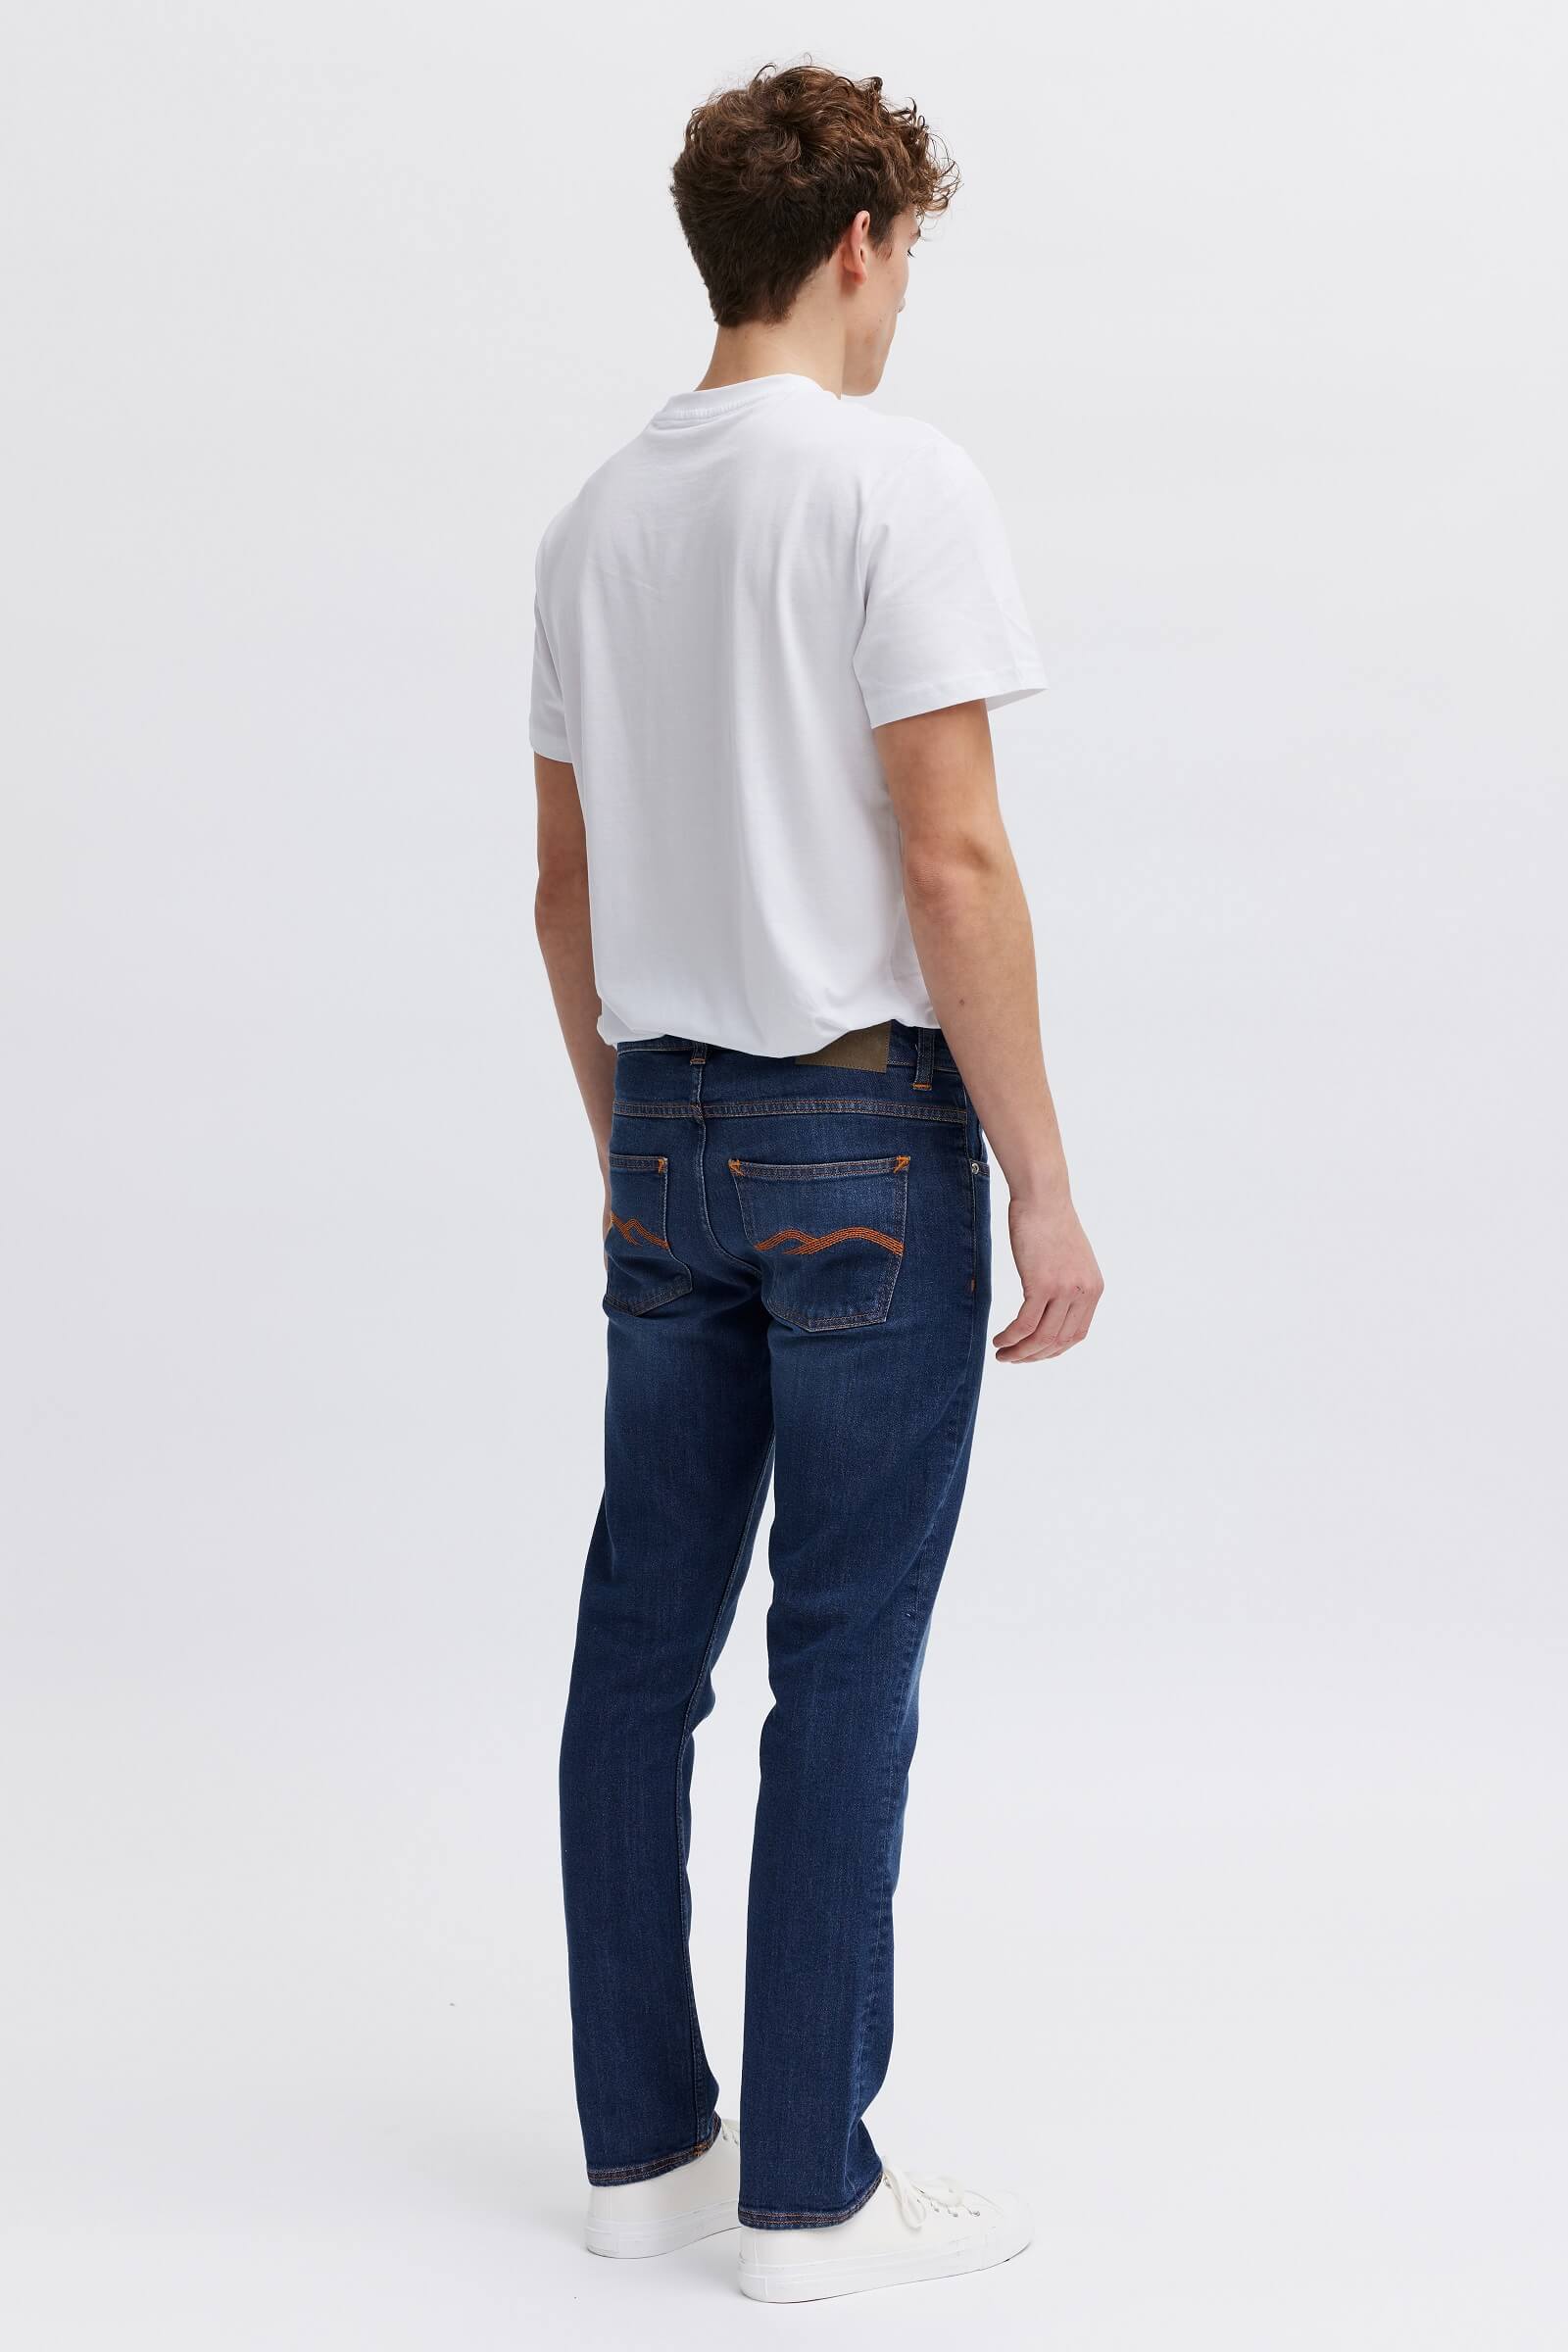 Organic cotton blue jeans for men